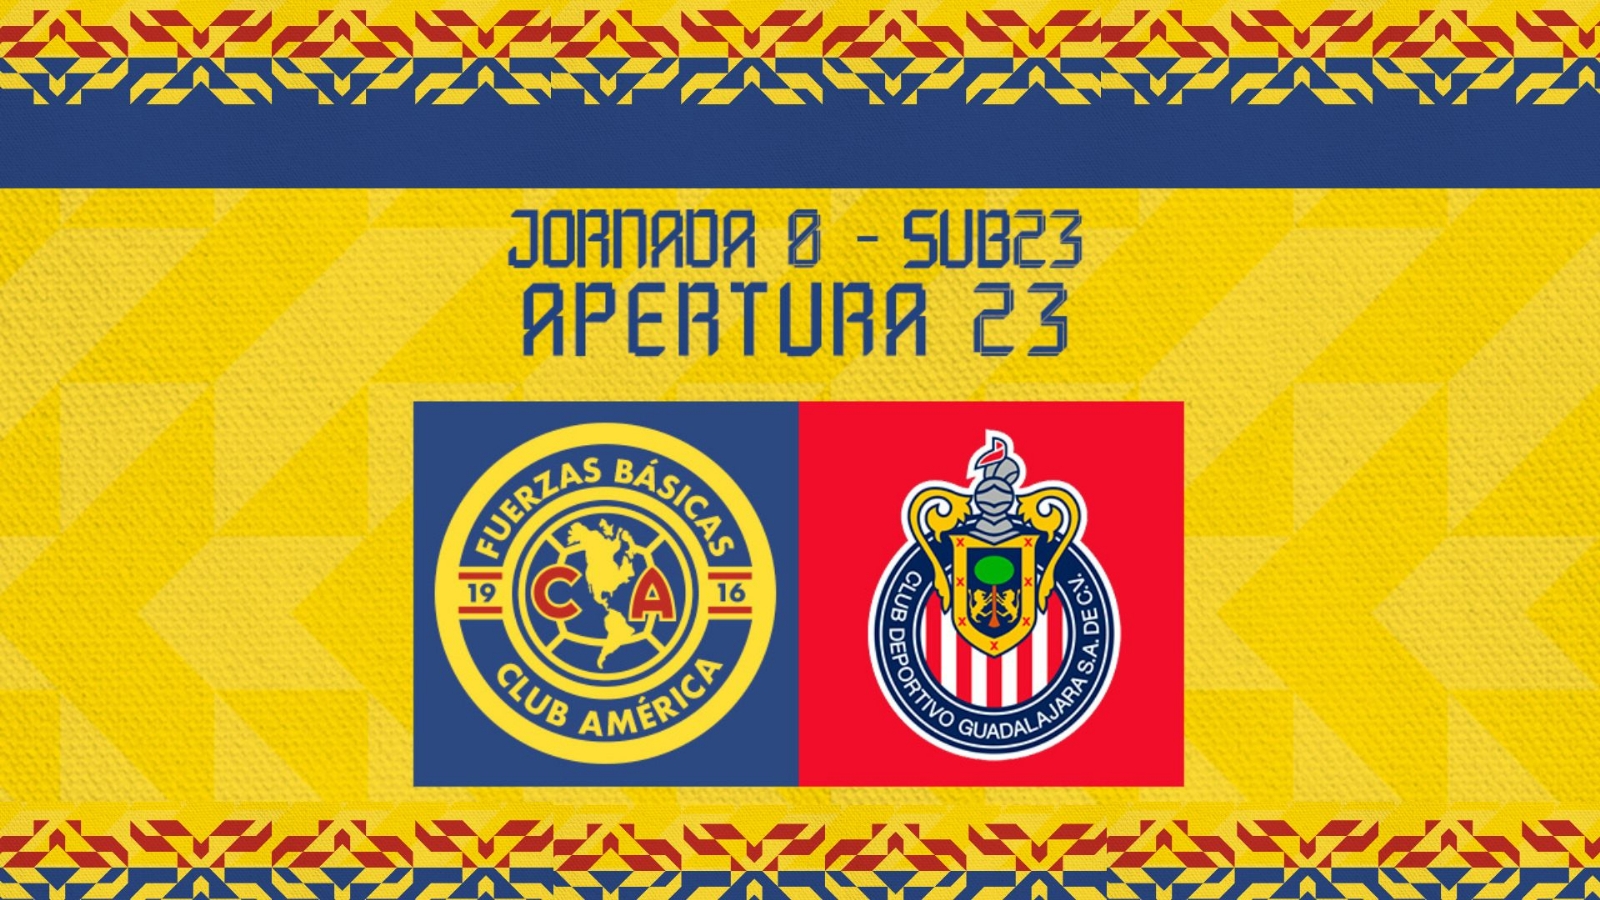 ¡Humillados! Chivas Sub23 GOLEA al Club América en el Clásico Nacional